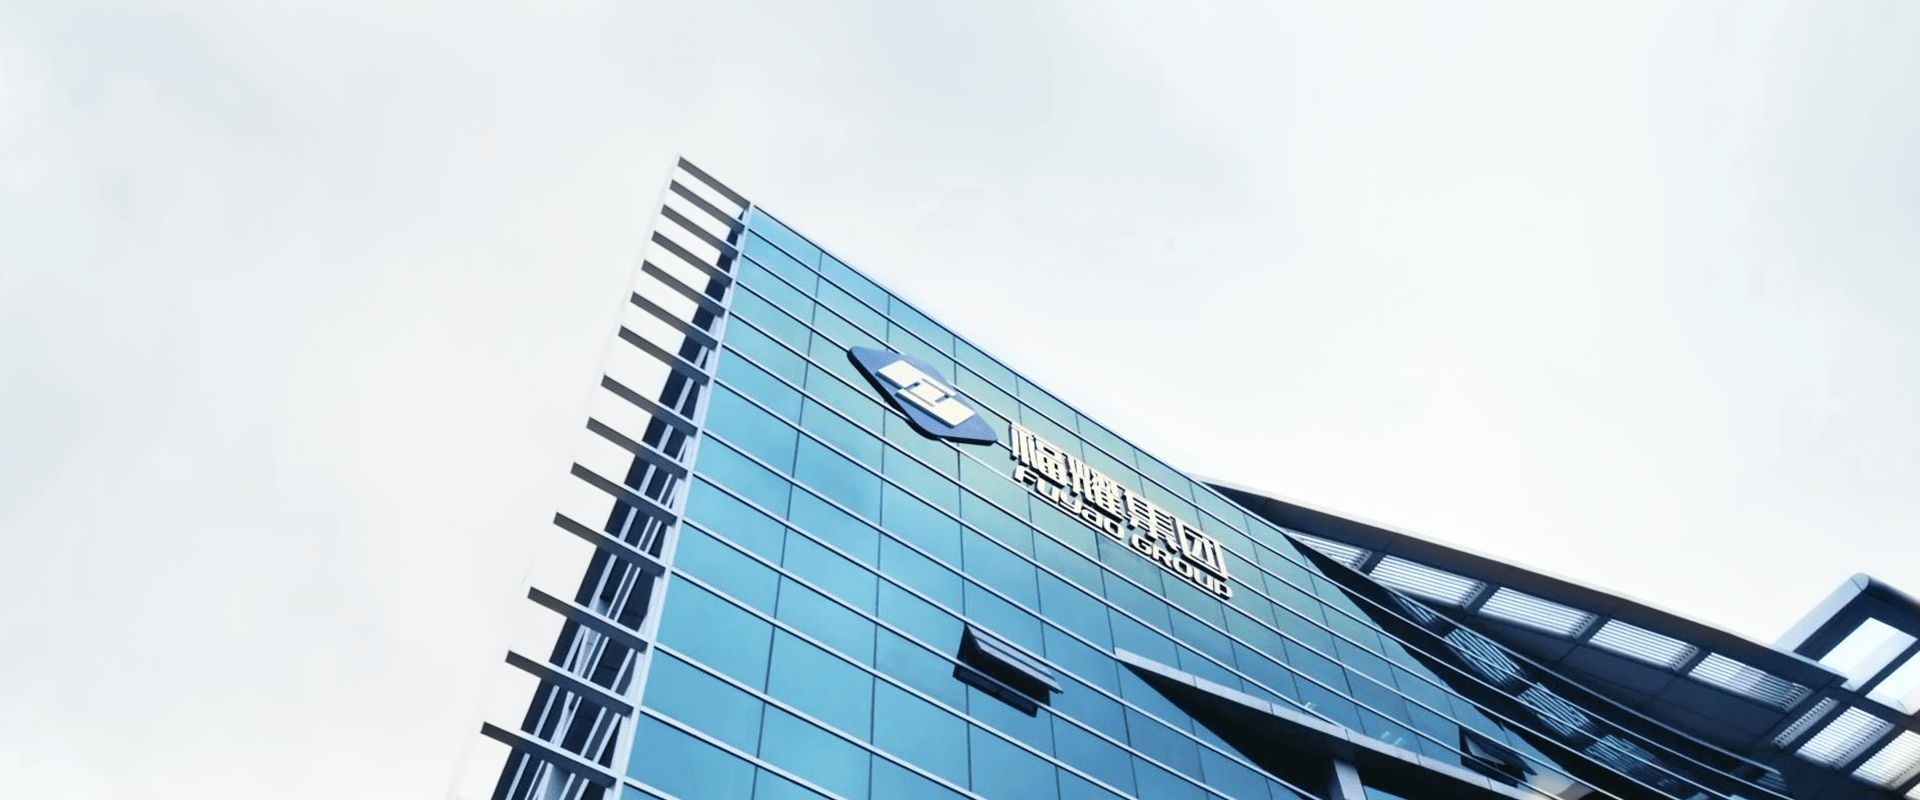 福耀玻璃工业集团股份有限公司),1987年成立于中国福州,是专注于汽车